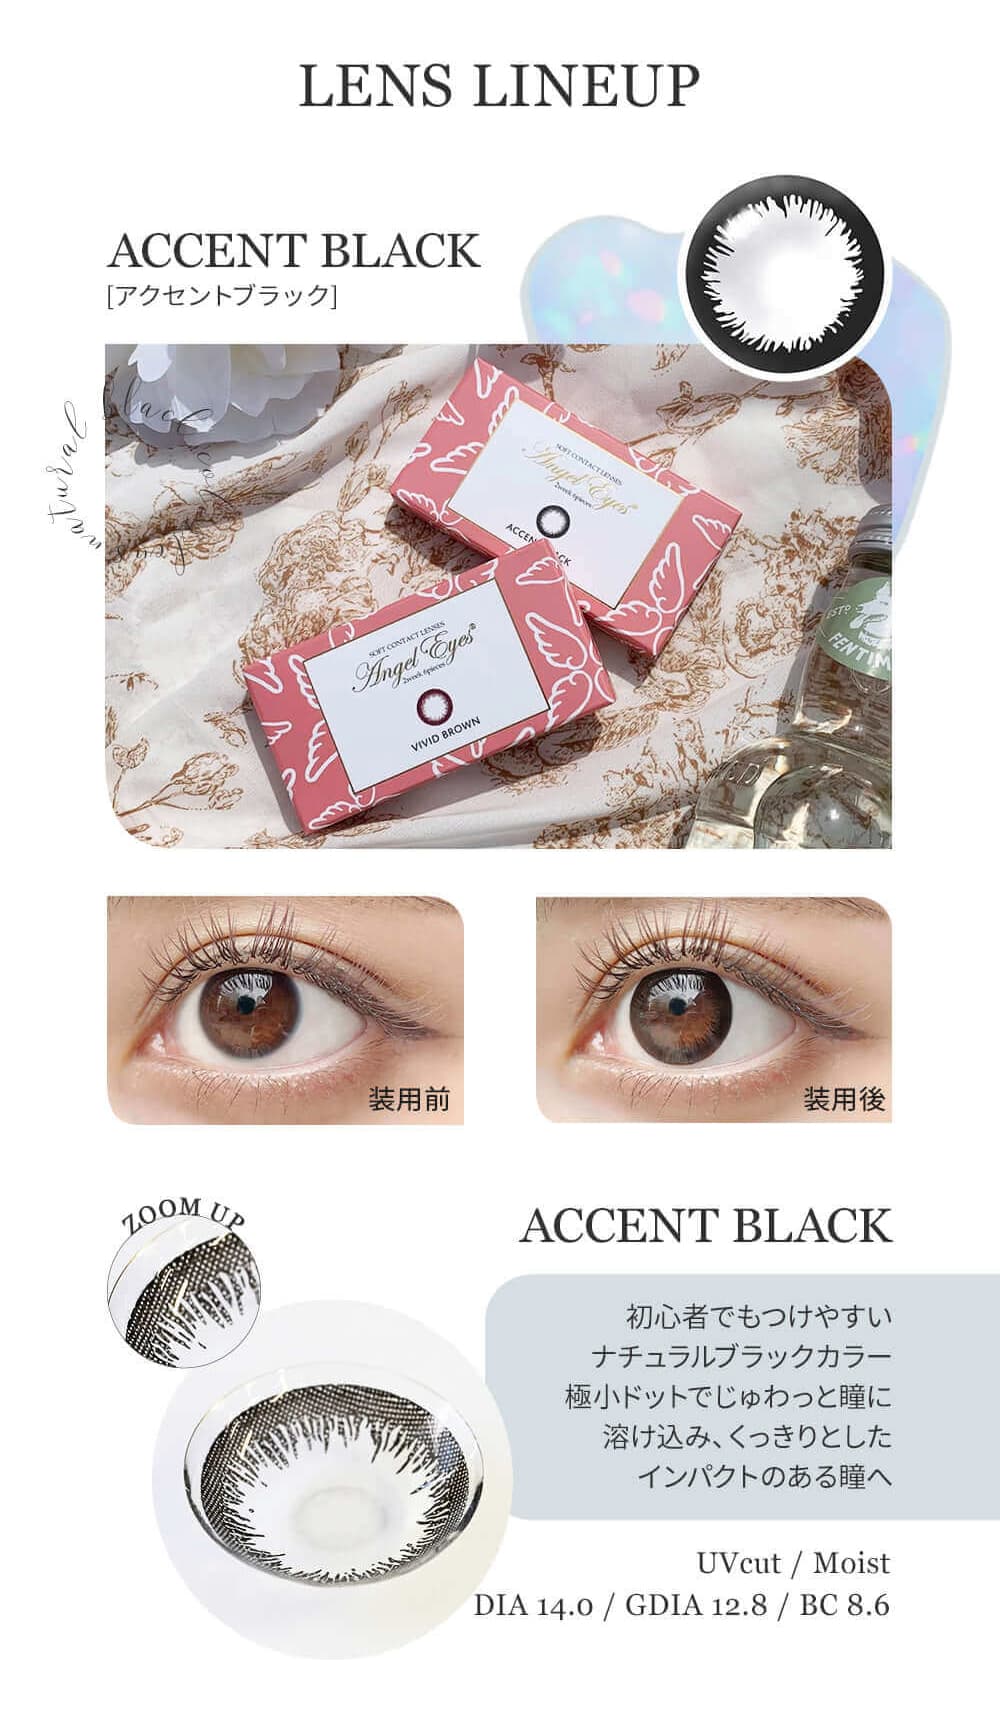 エンジェルアイズ2ウィーク「アクセントブラック」は透け感のある瞳に馴染むカラーが、上品な印象へ